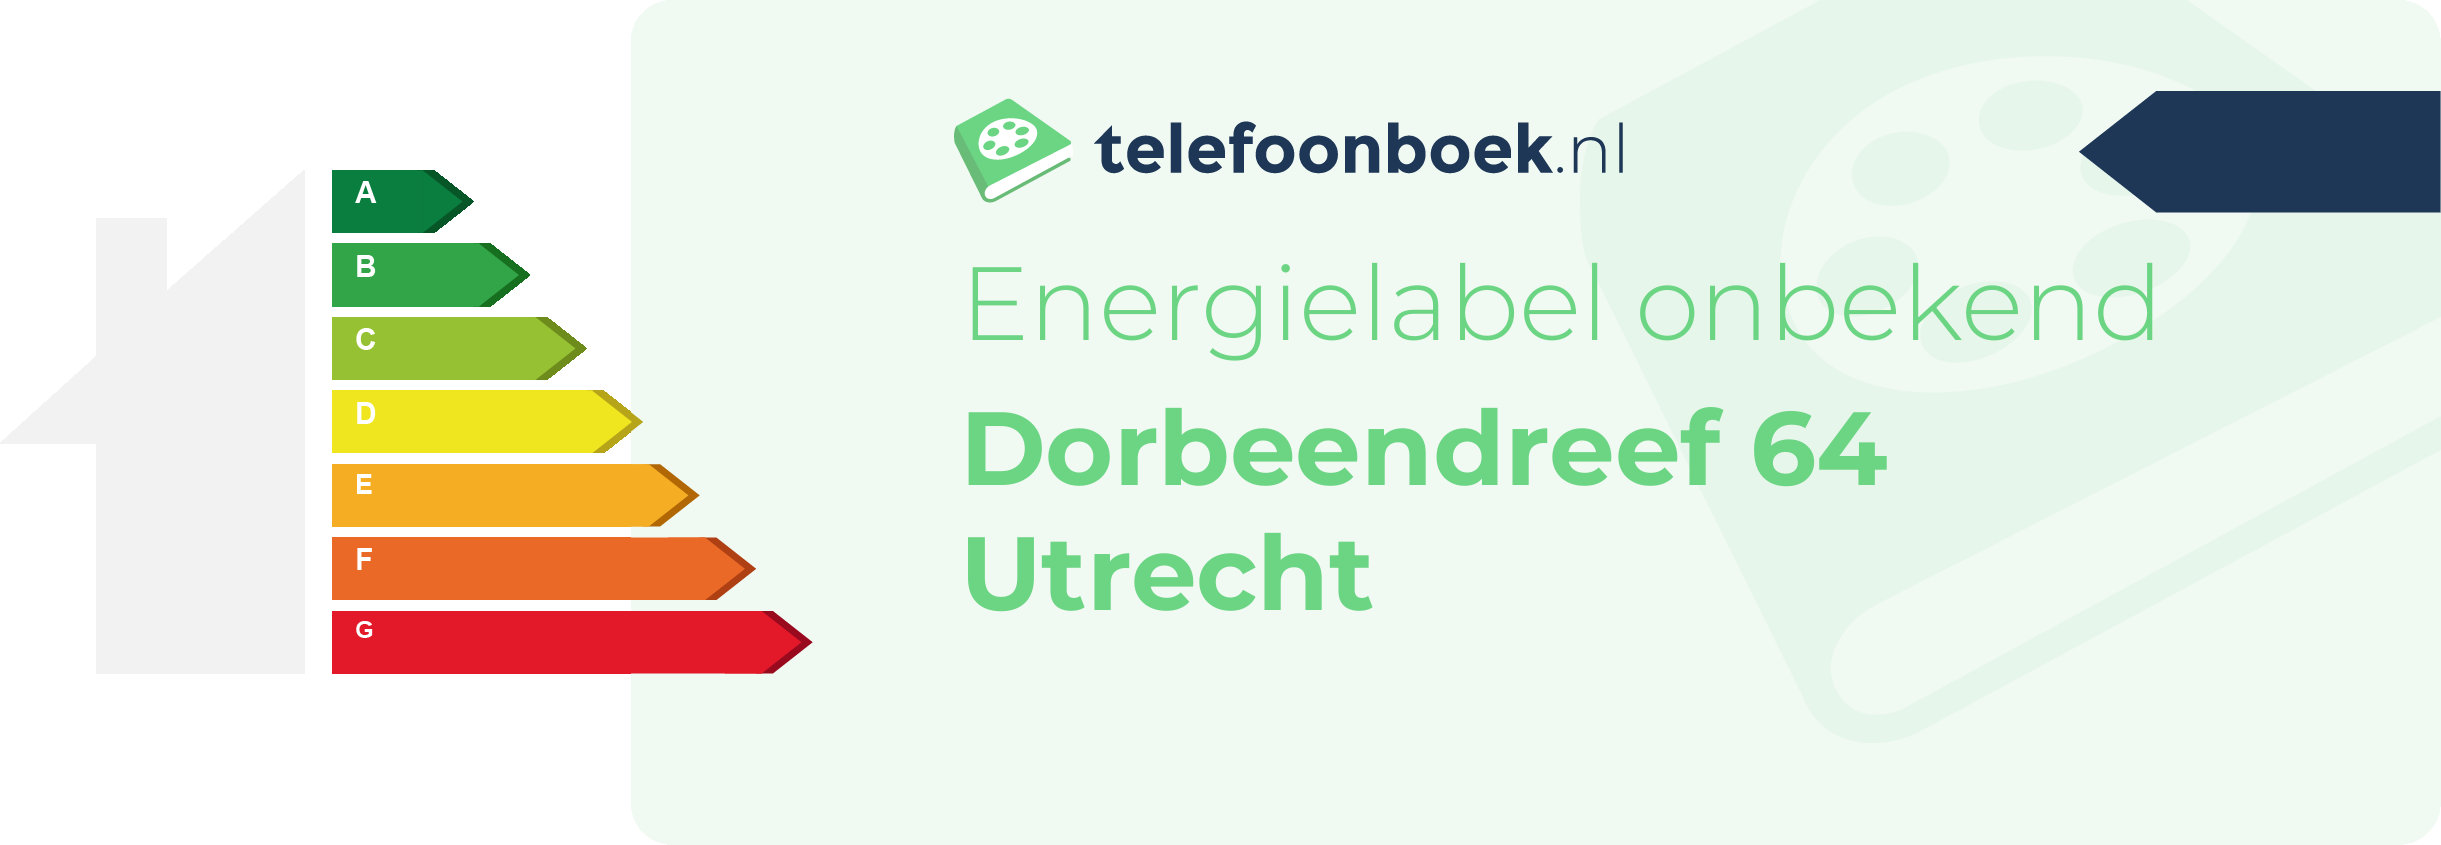 Energielabel Dorbeendreef 64 Utrecht